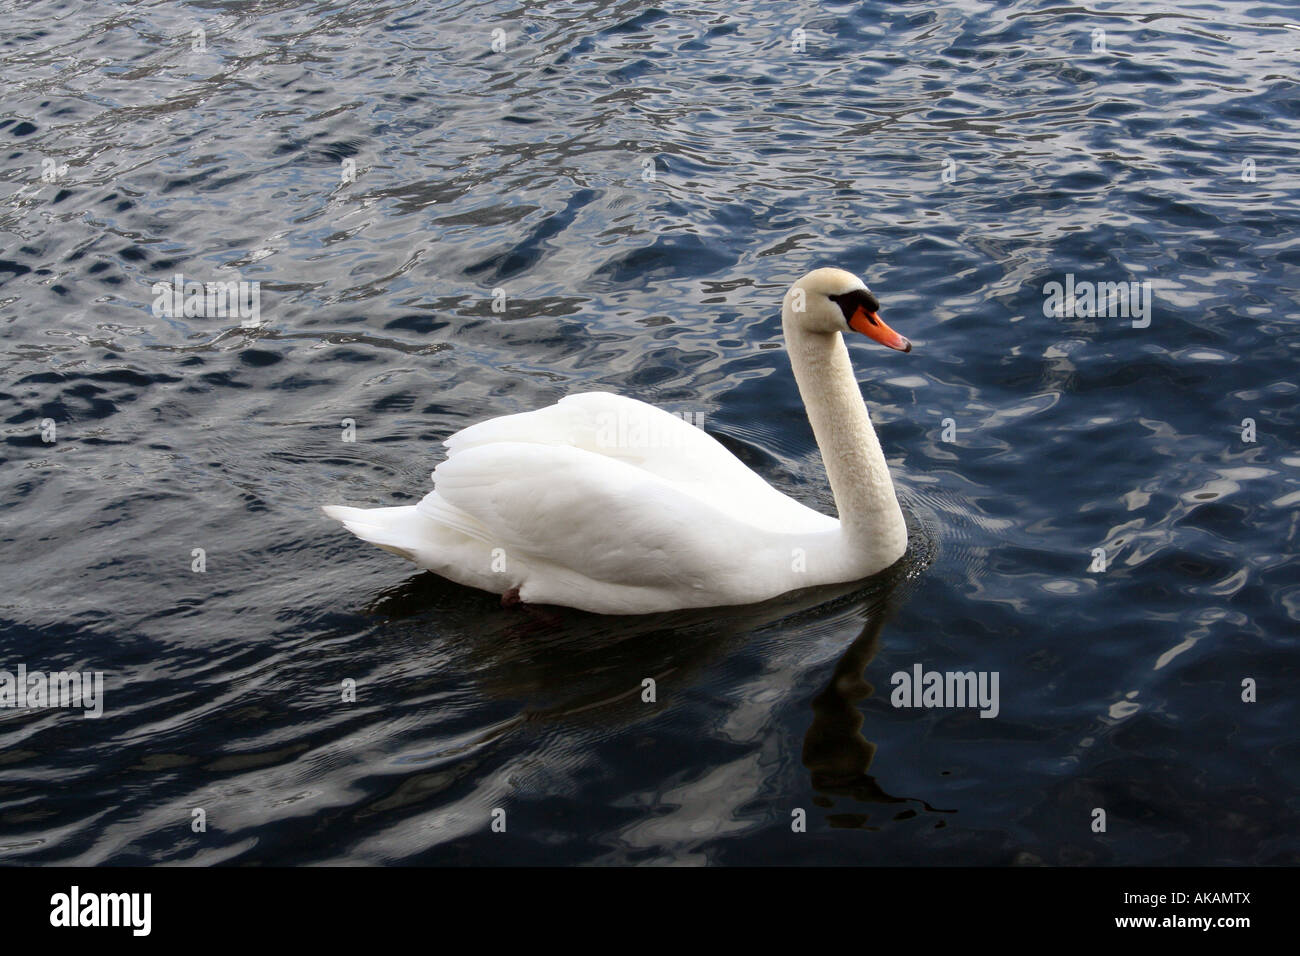 Beautiful swan swimming in lake Stock Photo